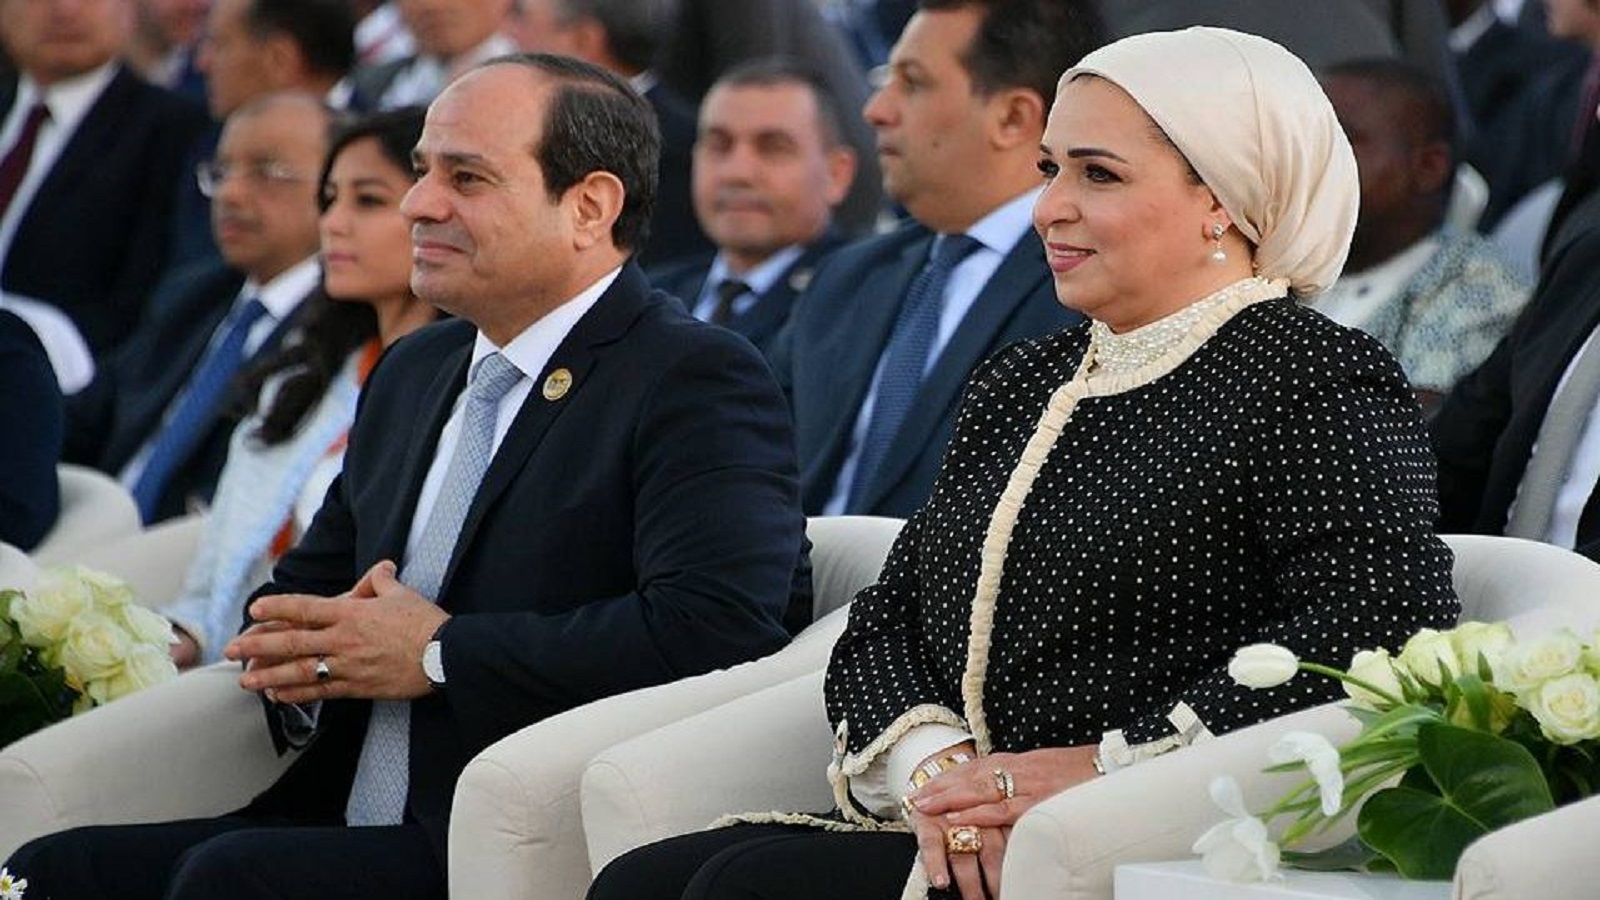 مصر:السيسي وزوجته وجنرالاته في قفص الاتهام بالفساد